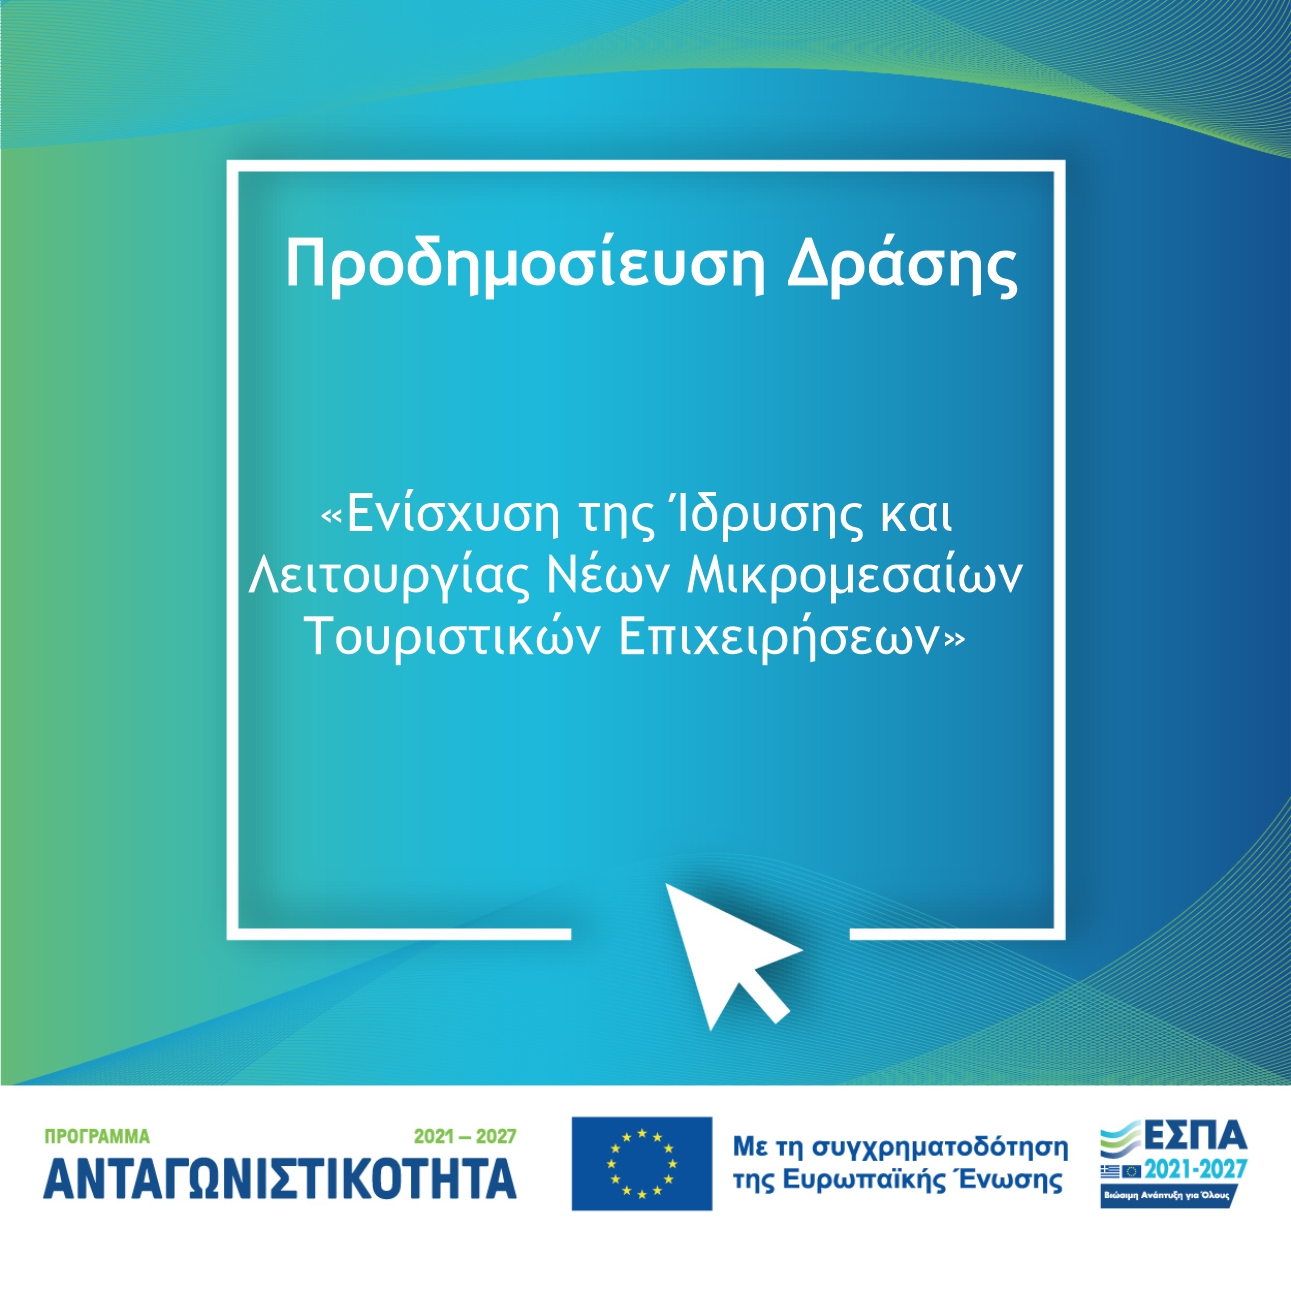 Πρόγραμμα «Ανταγωνιστικότητα» 2021-2027 / Ενίσχυση Ίδρυσης και Λειτουργίας νέων Μικρομεσαίων Τουριστικών Επιχειρήσεων